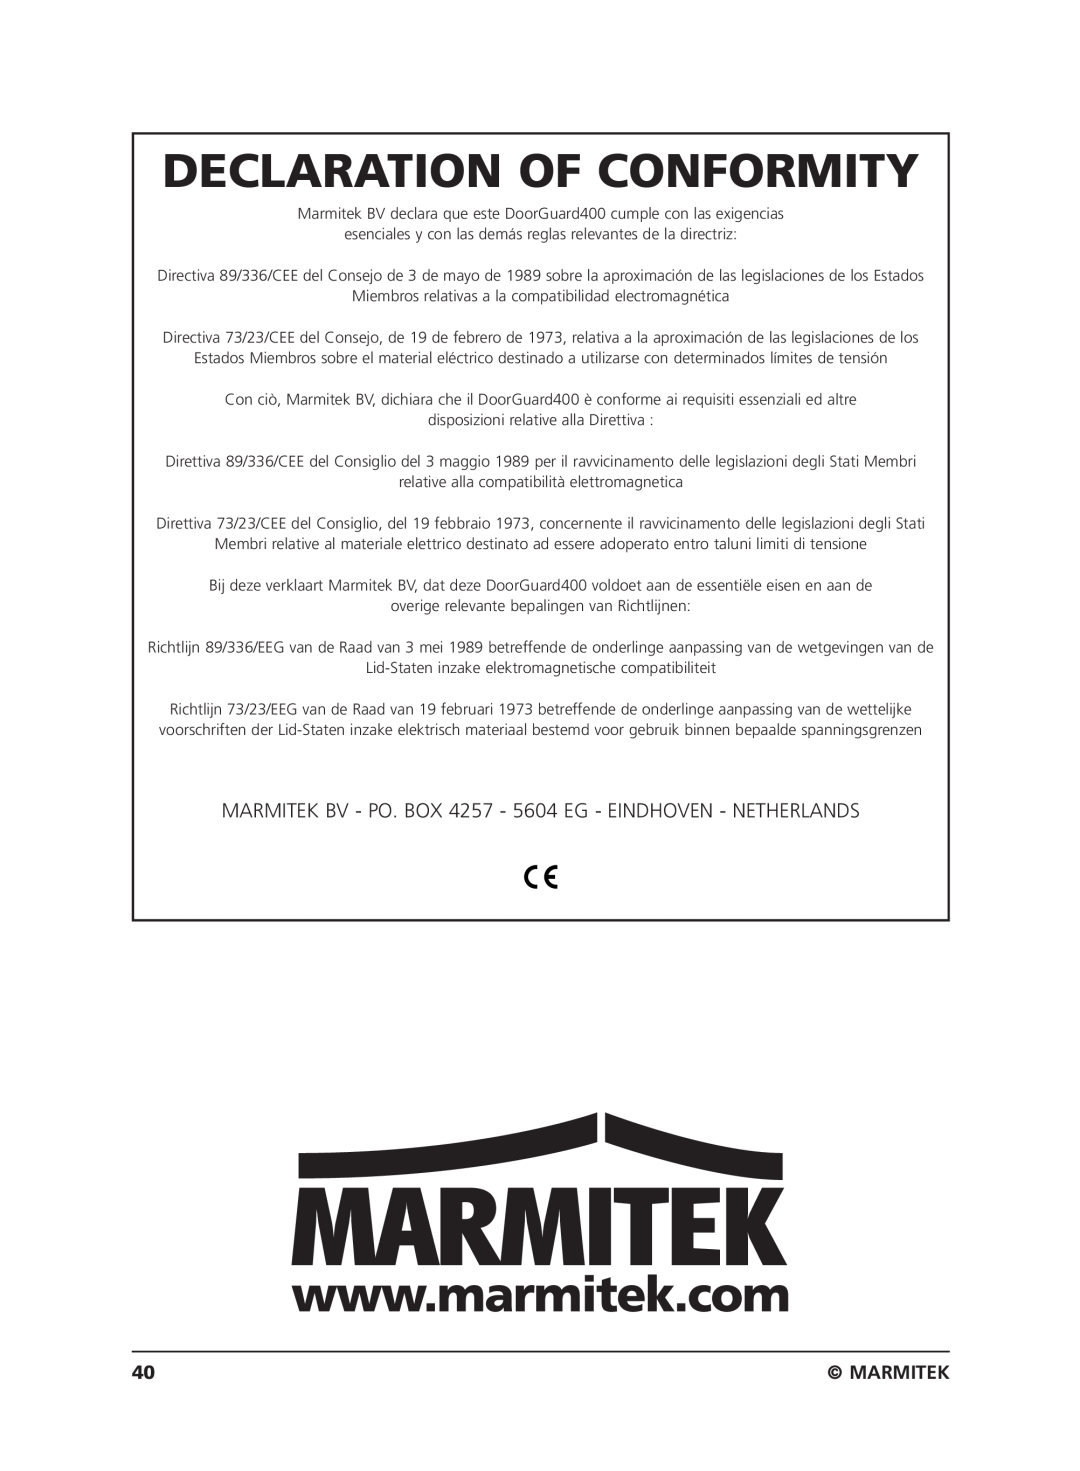 Marmitek VIDEO DOORPHONE user manual Declaration Of Conformity, Marmitek 